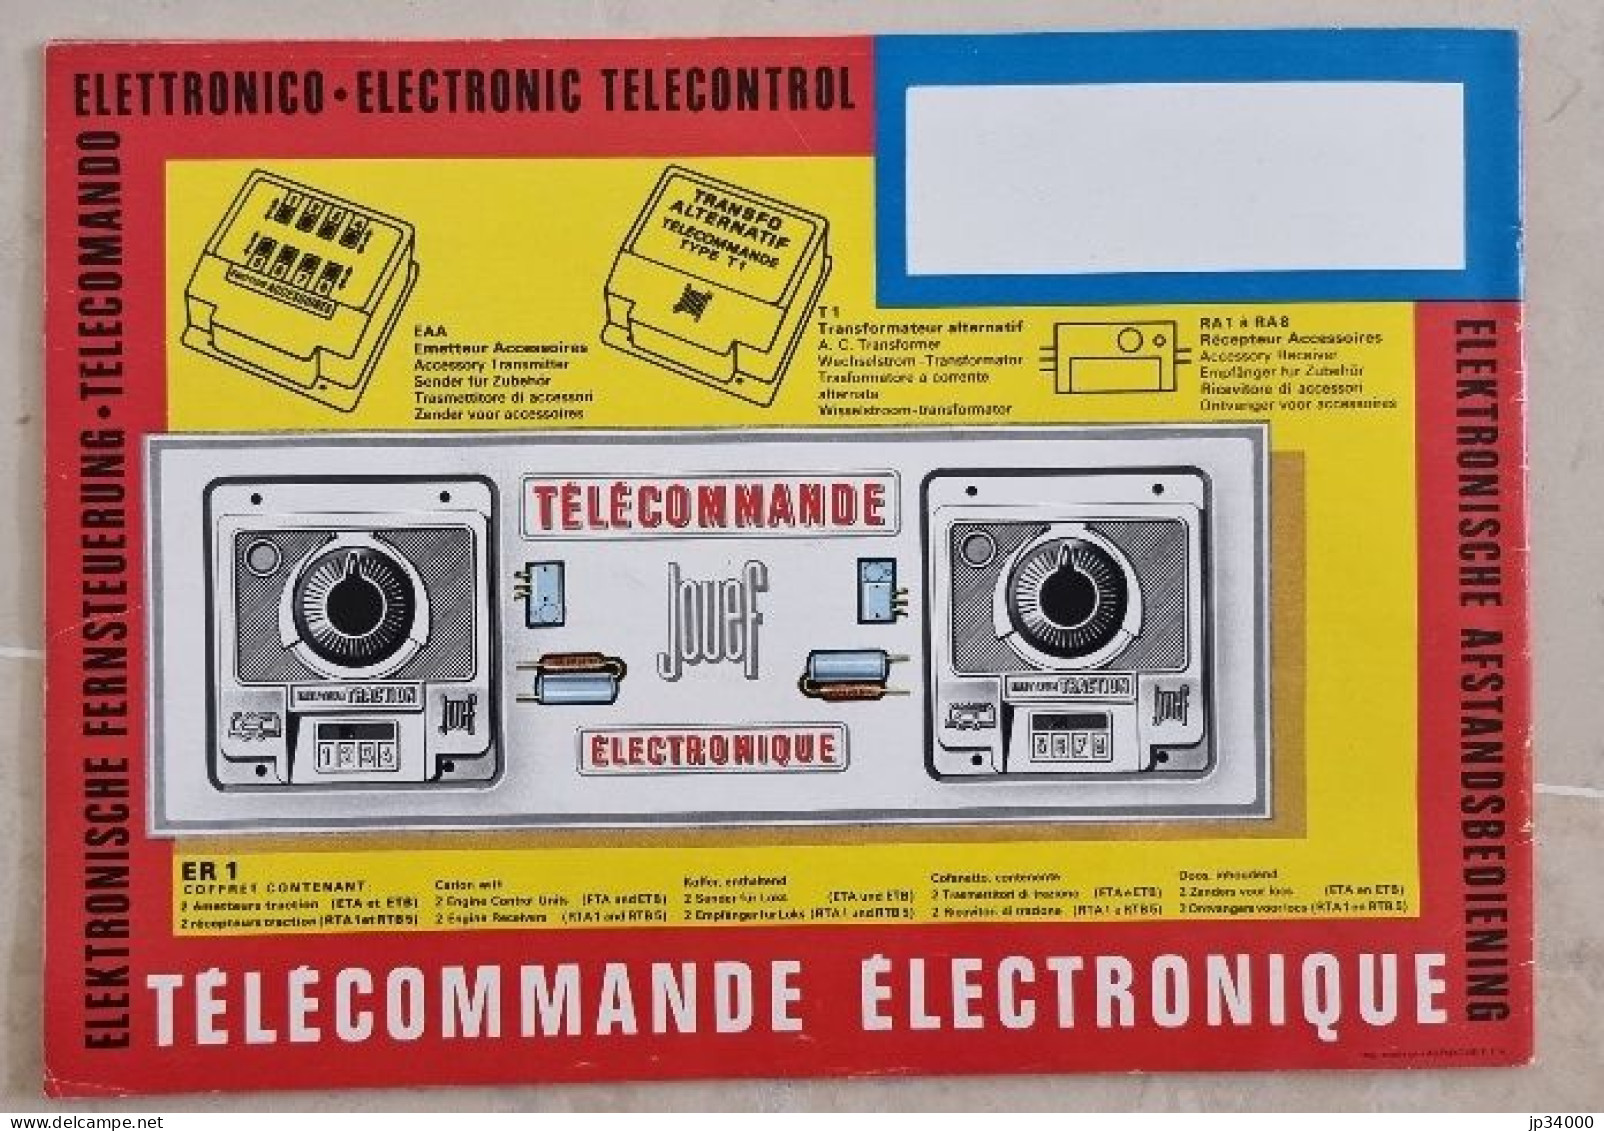 TELECOMMANDE ELECTRONIQUE (Jouef HO) Complet 32 Pages, 1968-69 (Trains Electriques) - Literatura & DVD